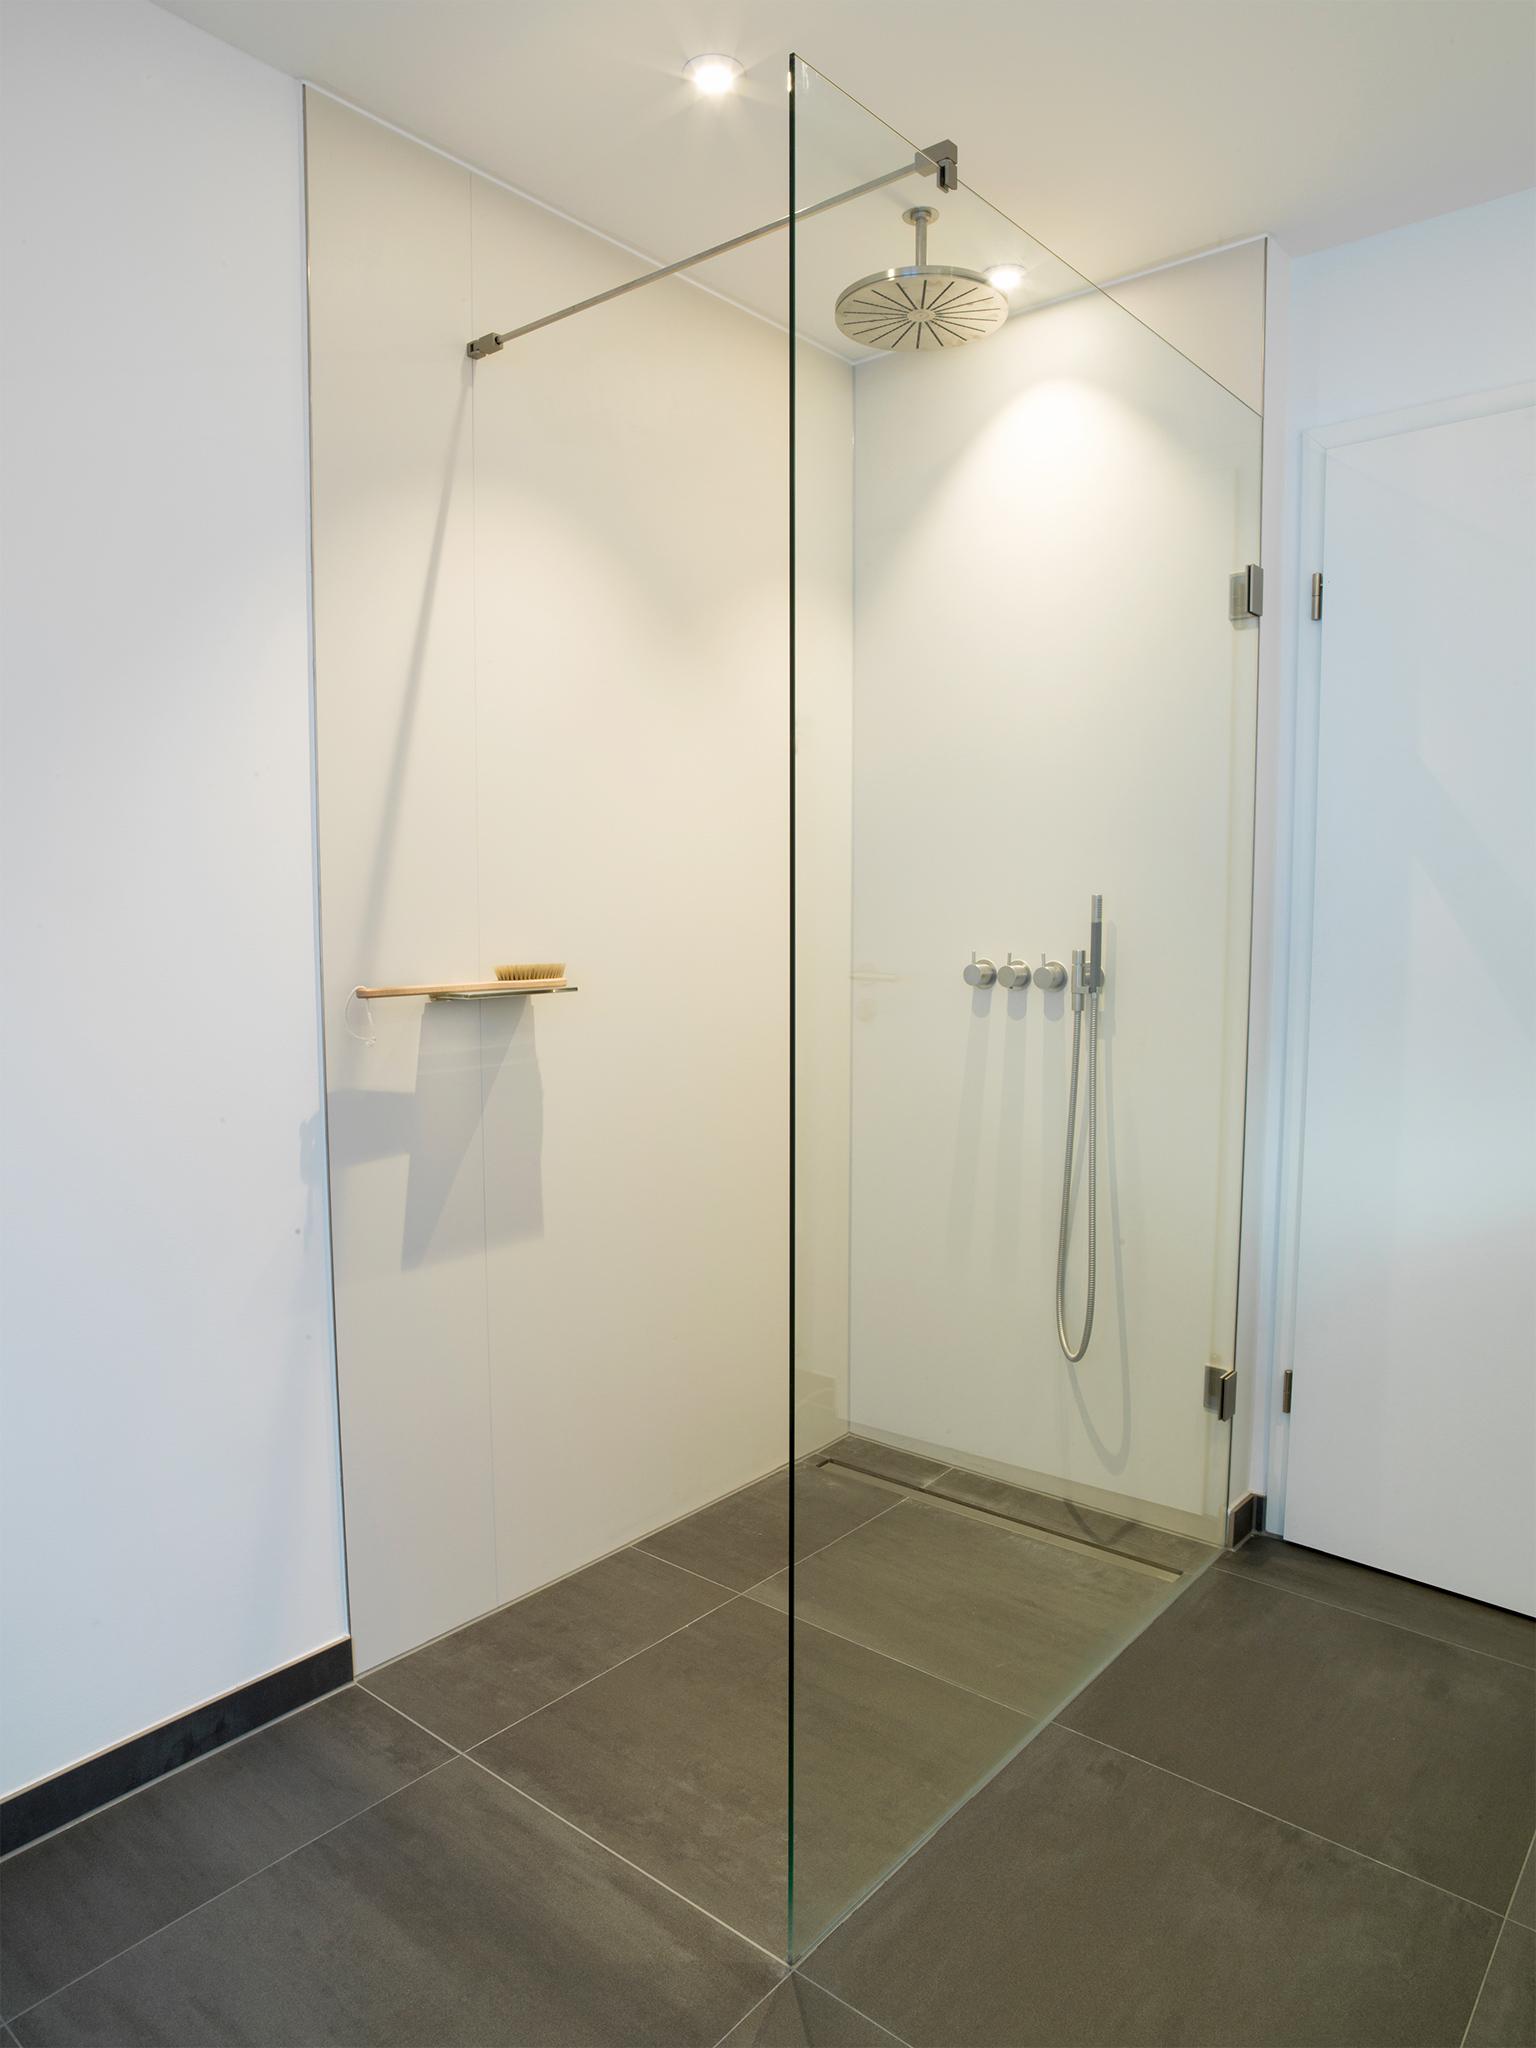 Die Dusche: Ebenerdige Walk-In-Lösung #badezimmer #duschbad #ebenerdigedusche #doppelwaschtisch ©HEIMWOHL GmbH